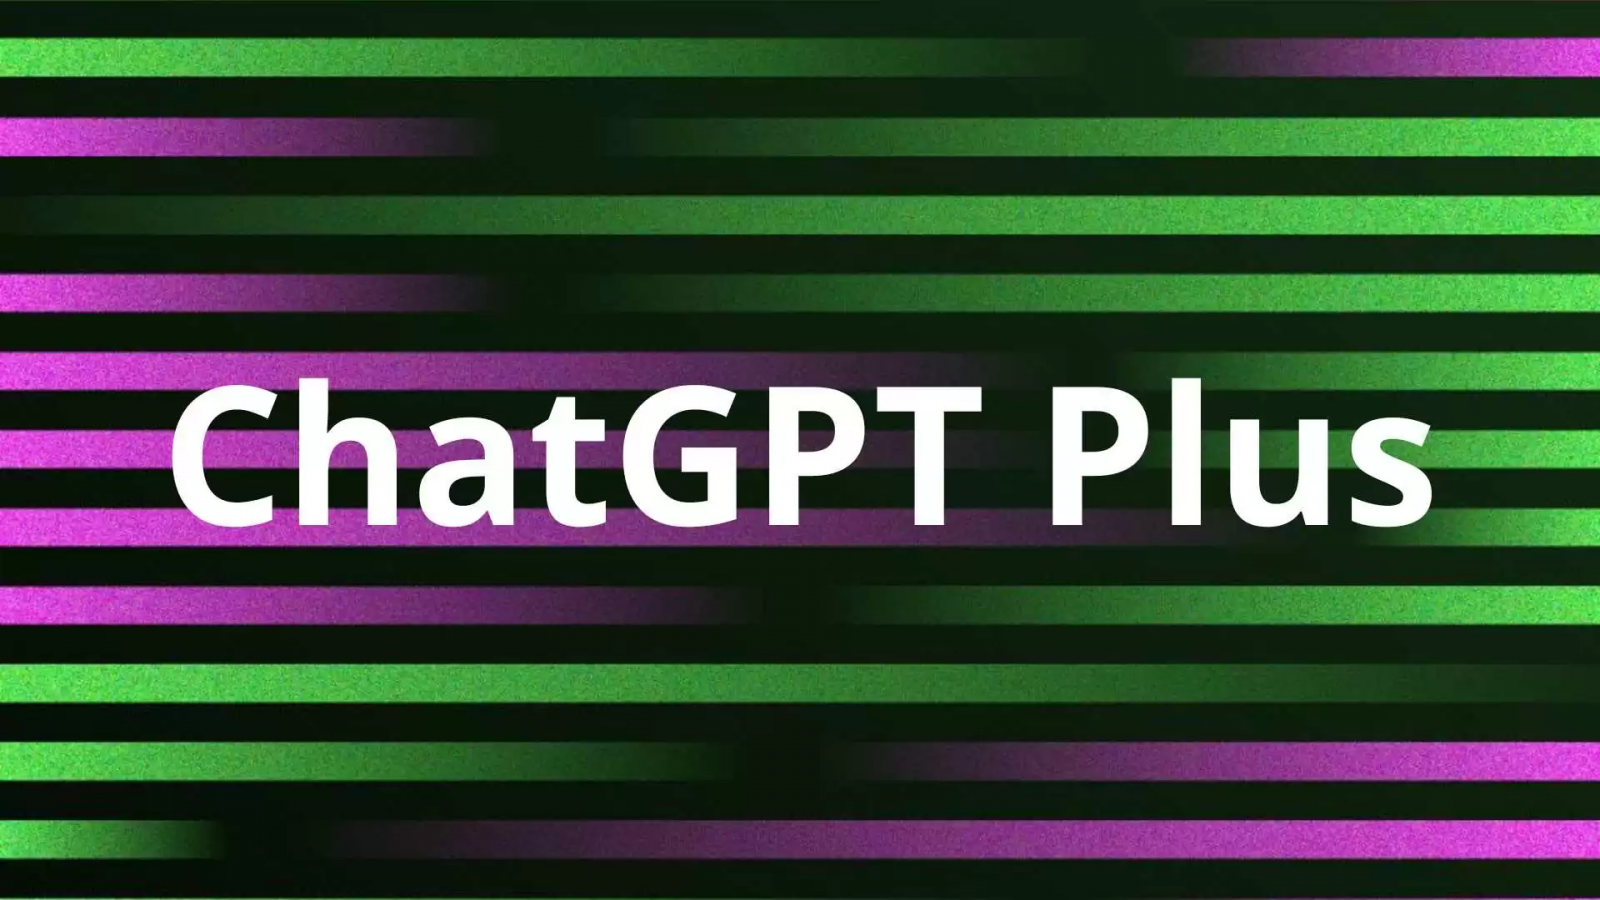 ChatGPT Plus là gì? Cách đăng ký gói ChatGPT Plus tại Việt Nam